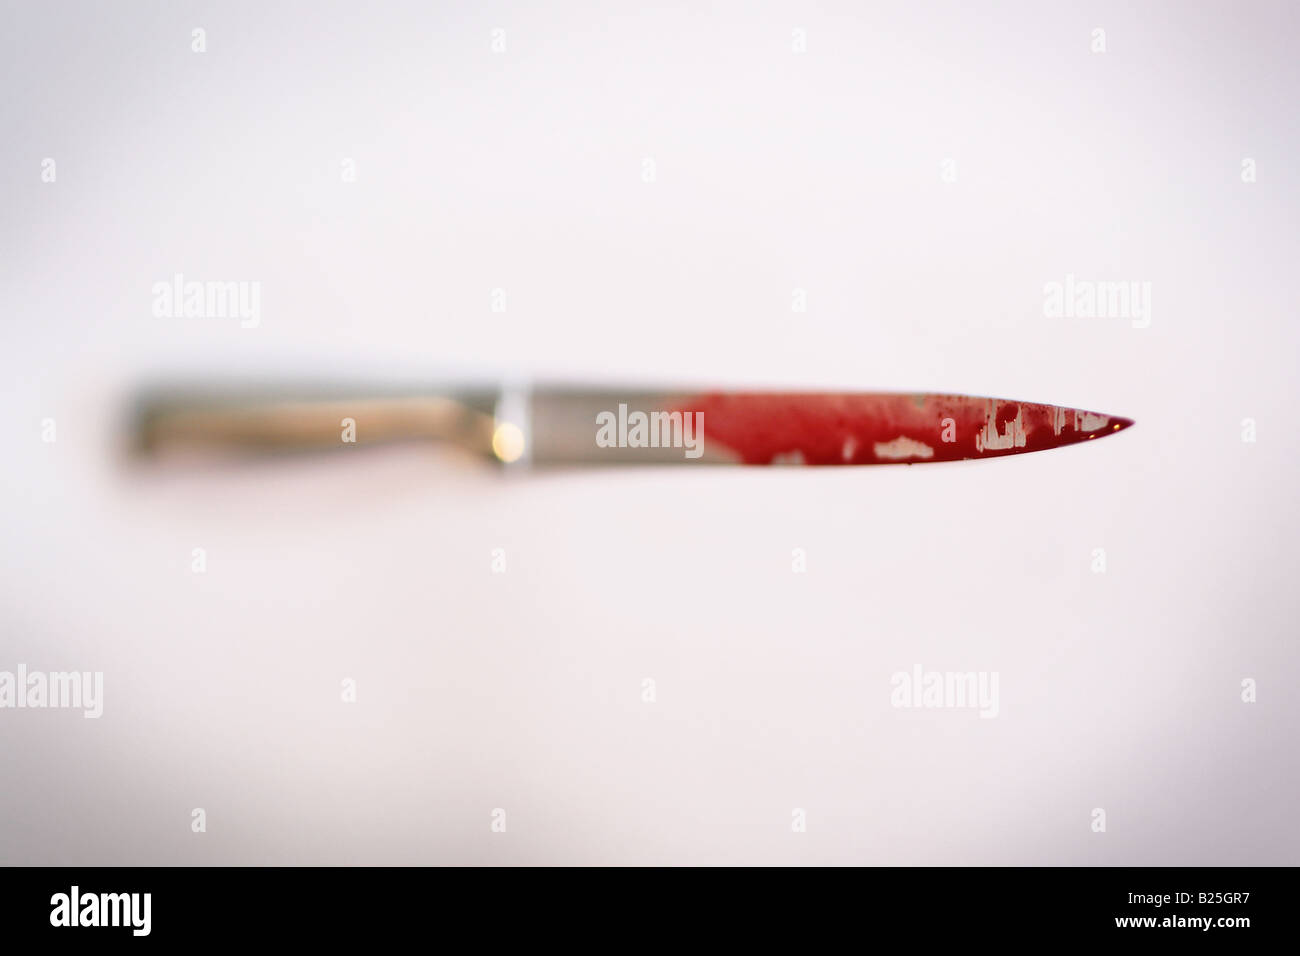 Un couteau de cuisine avec du sang Banque D'Images